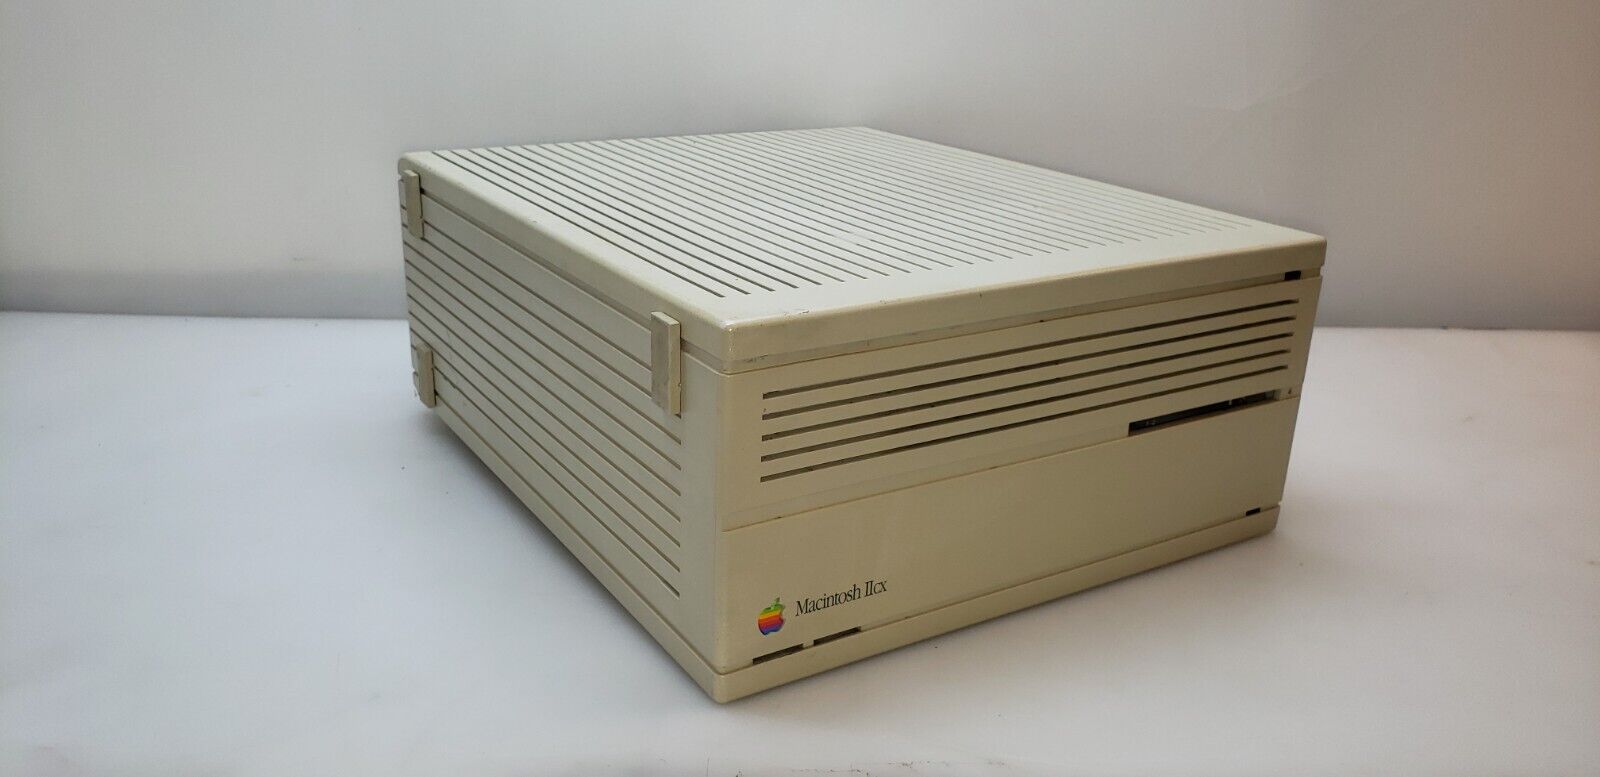 Vintage Apple Macintosh IIcx Model M5650 - For Parts or Repair #99